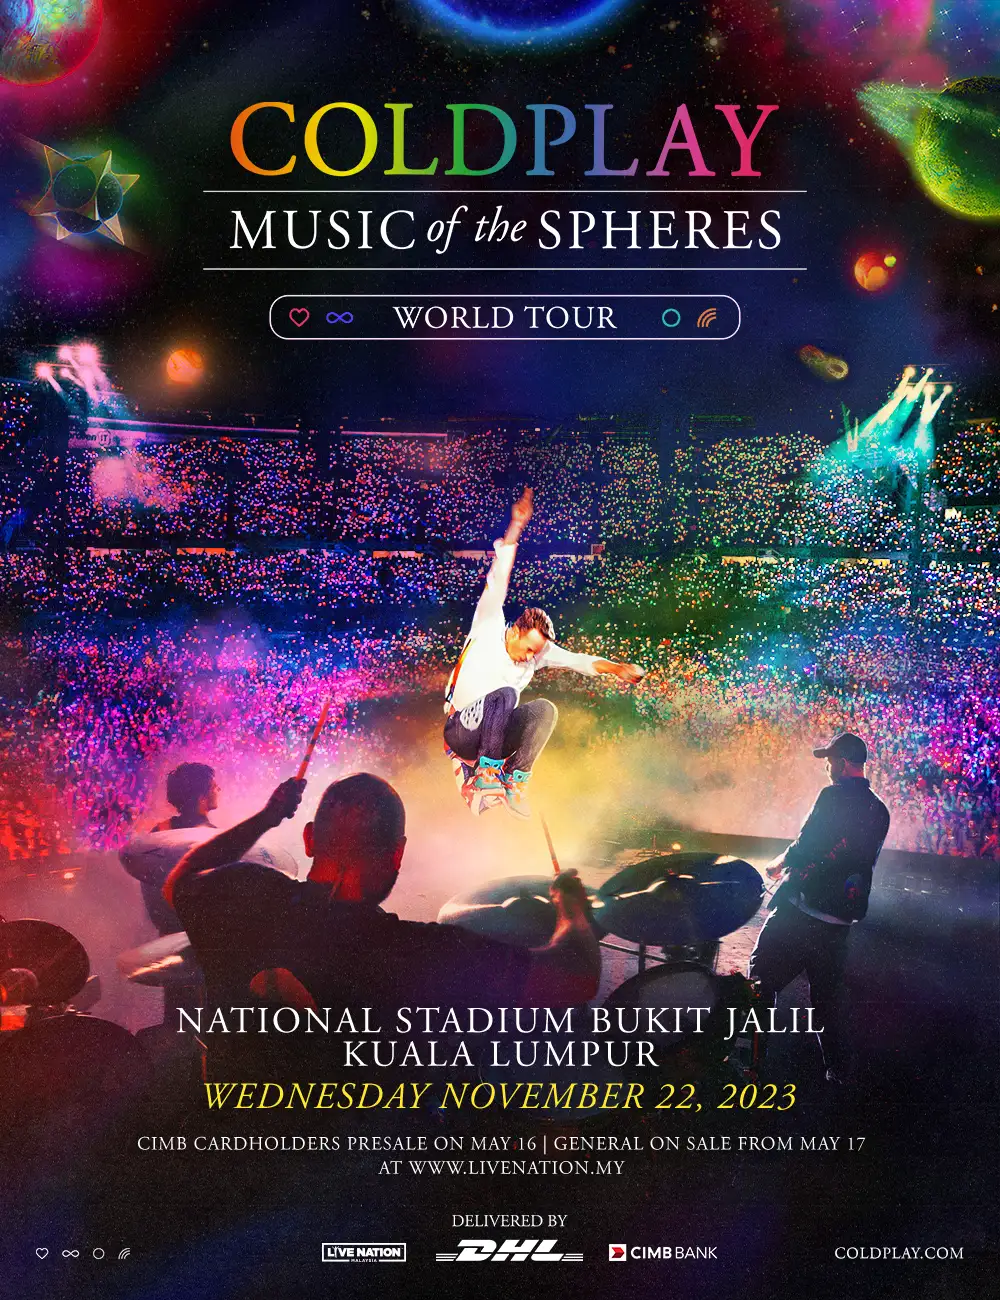 Konsert Coldplay di KL jana kutipan tiket hampir RM52 juta